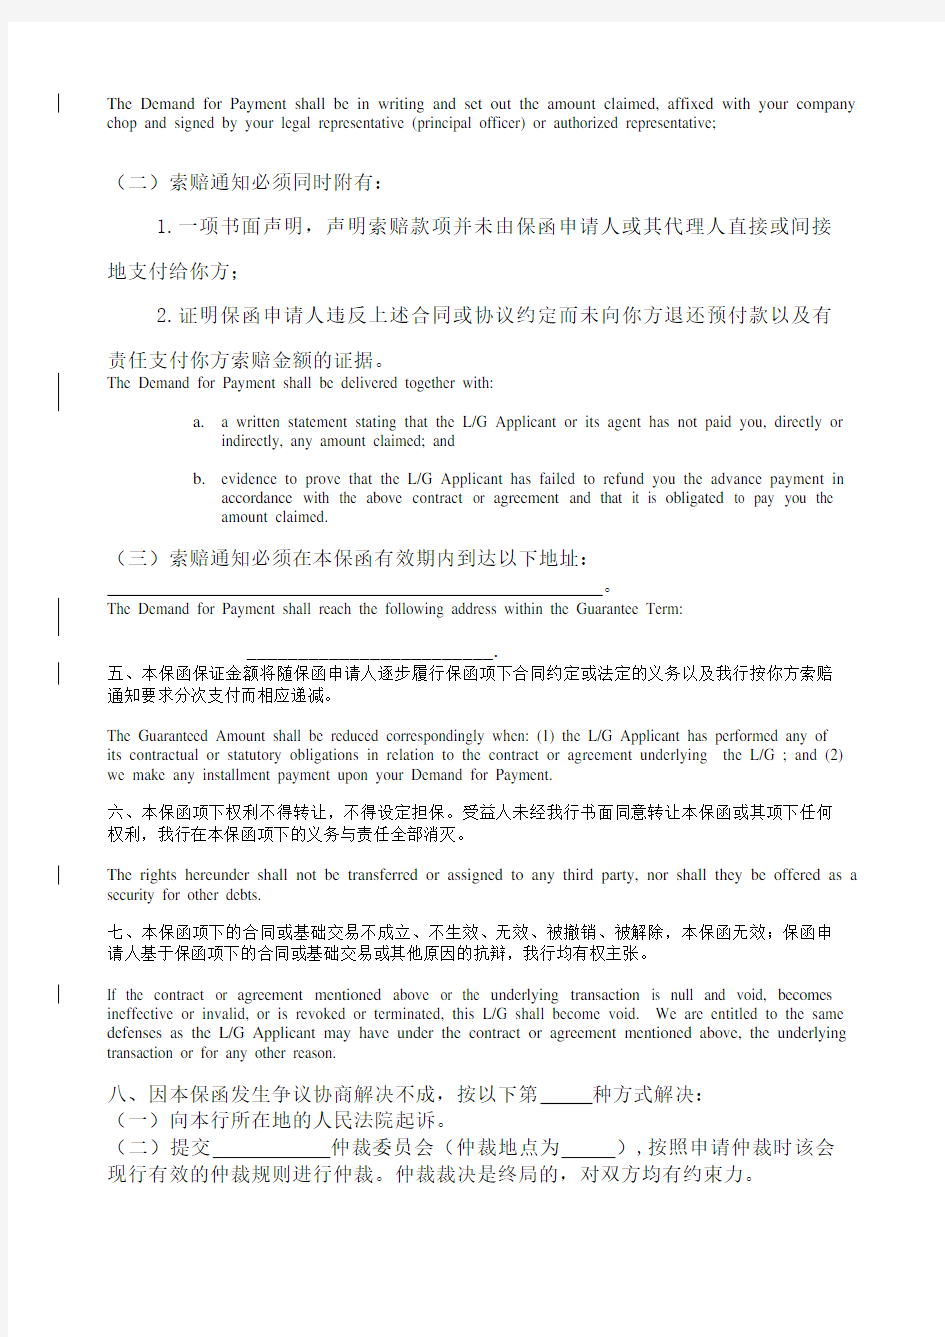 预付款保函 中英文对照 中国银行格式 